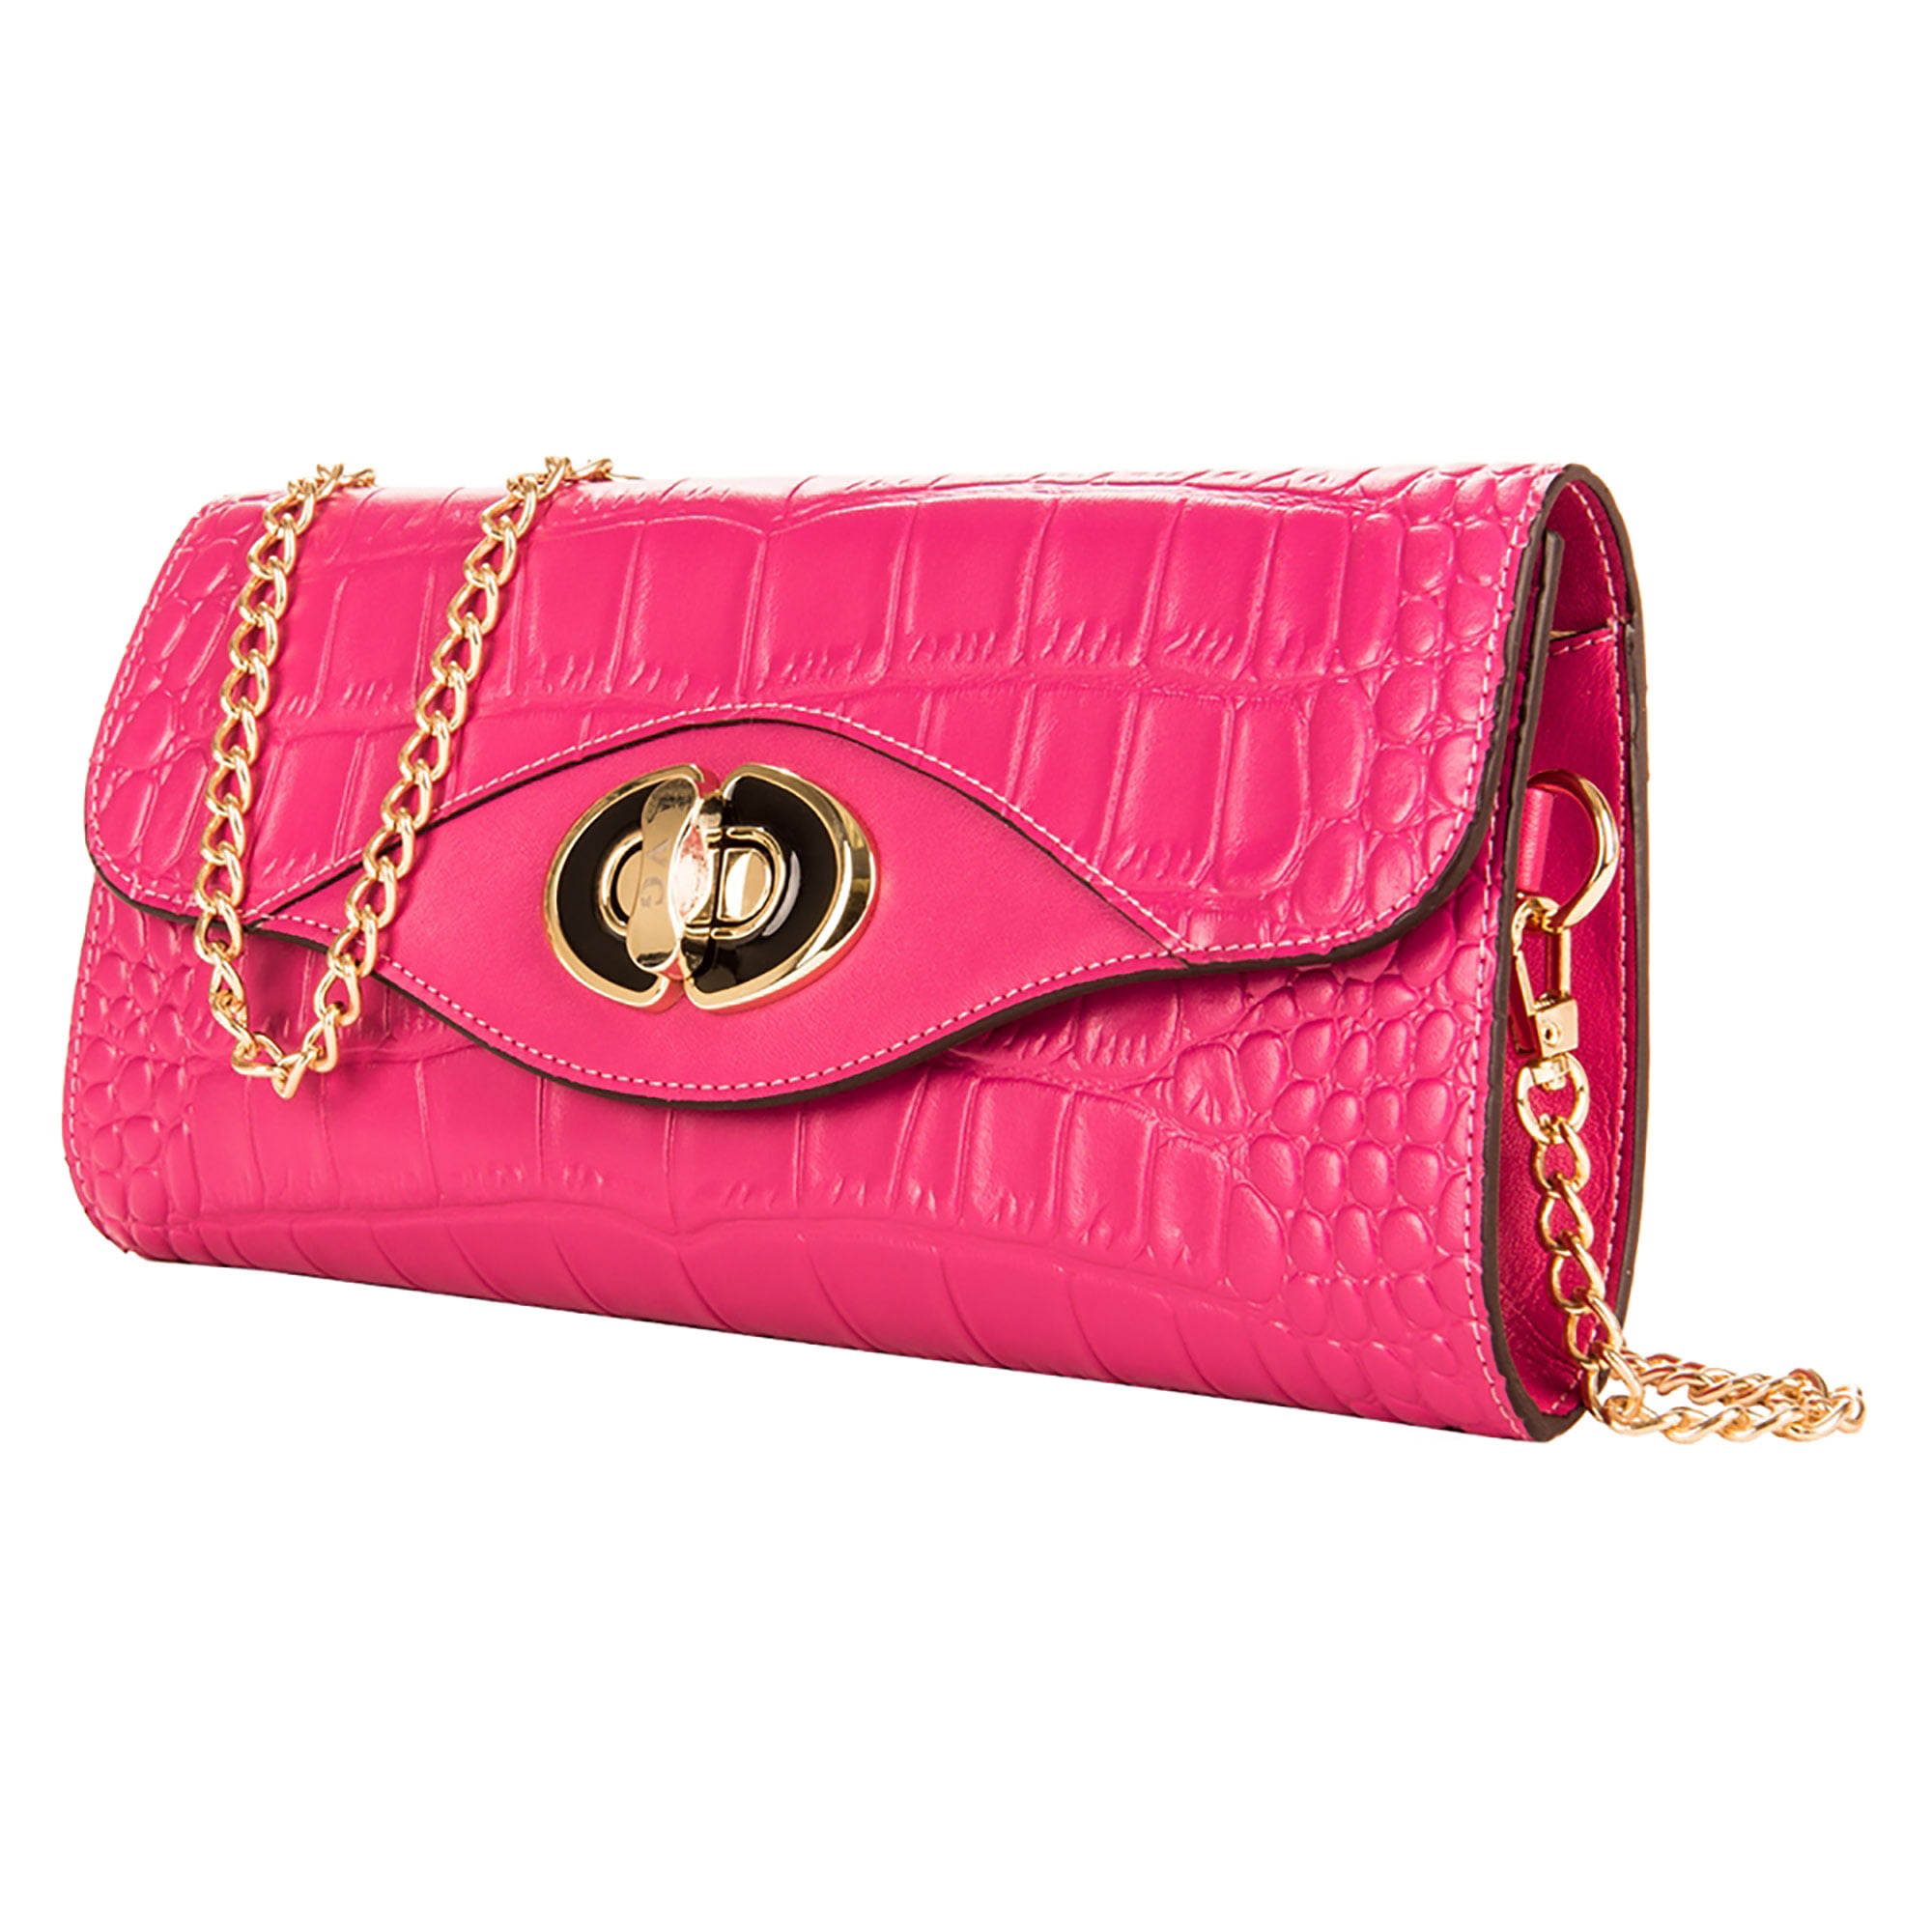 Bags Clutches Tosca blu Clutch pink elegant 